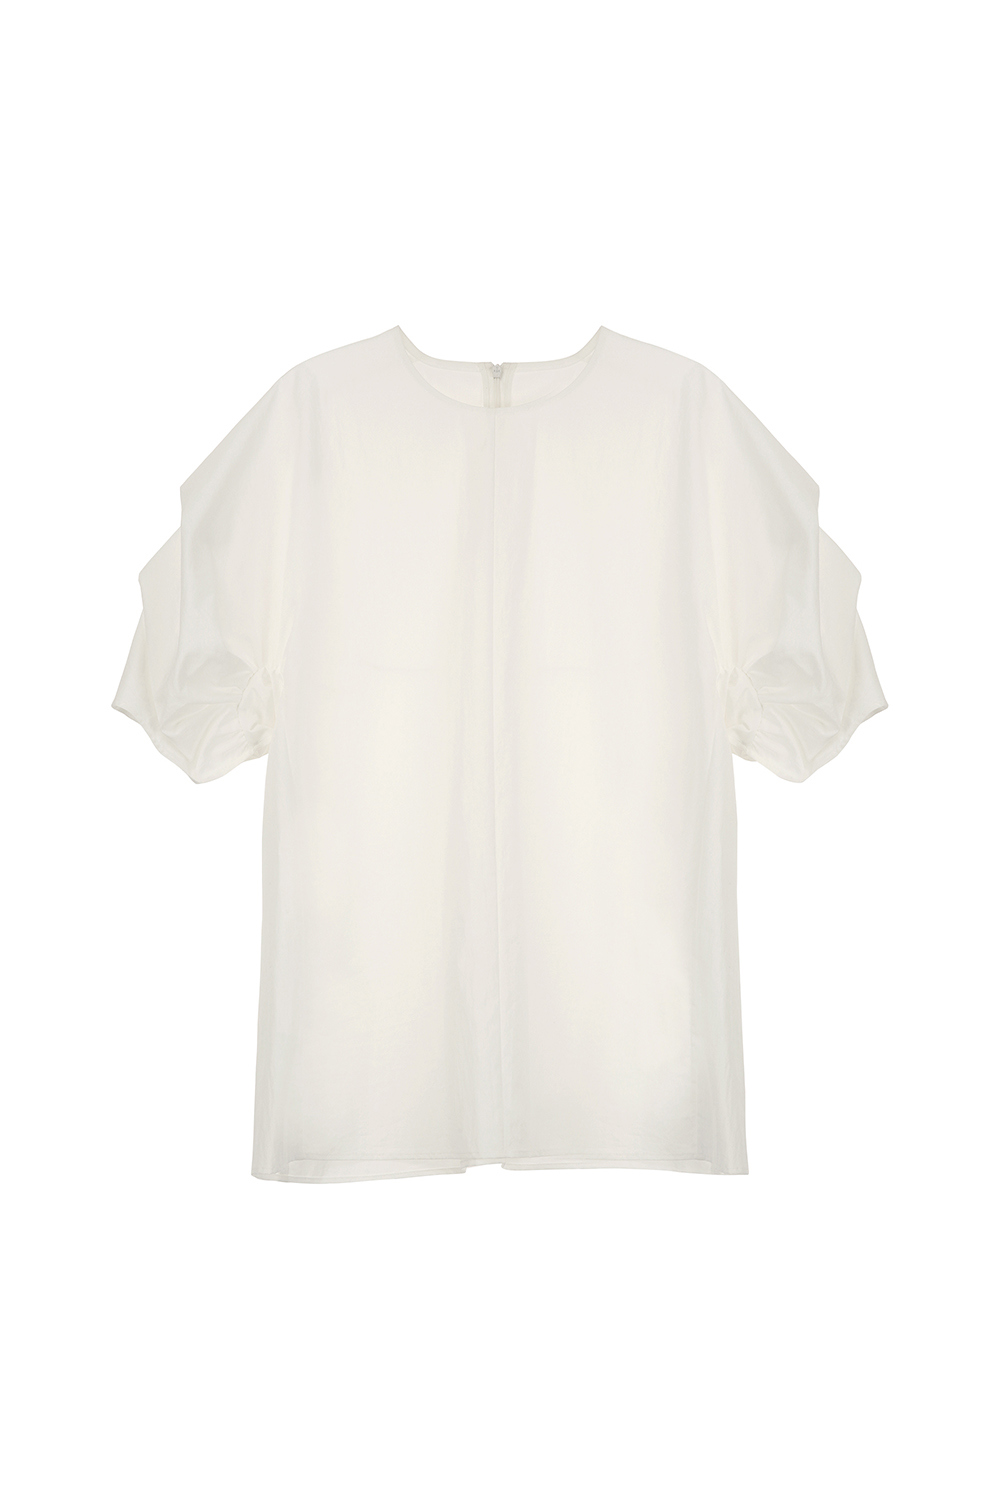 blouse white color image-S2L17